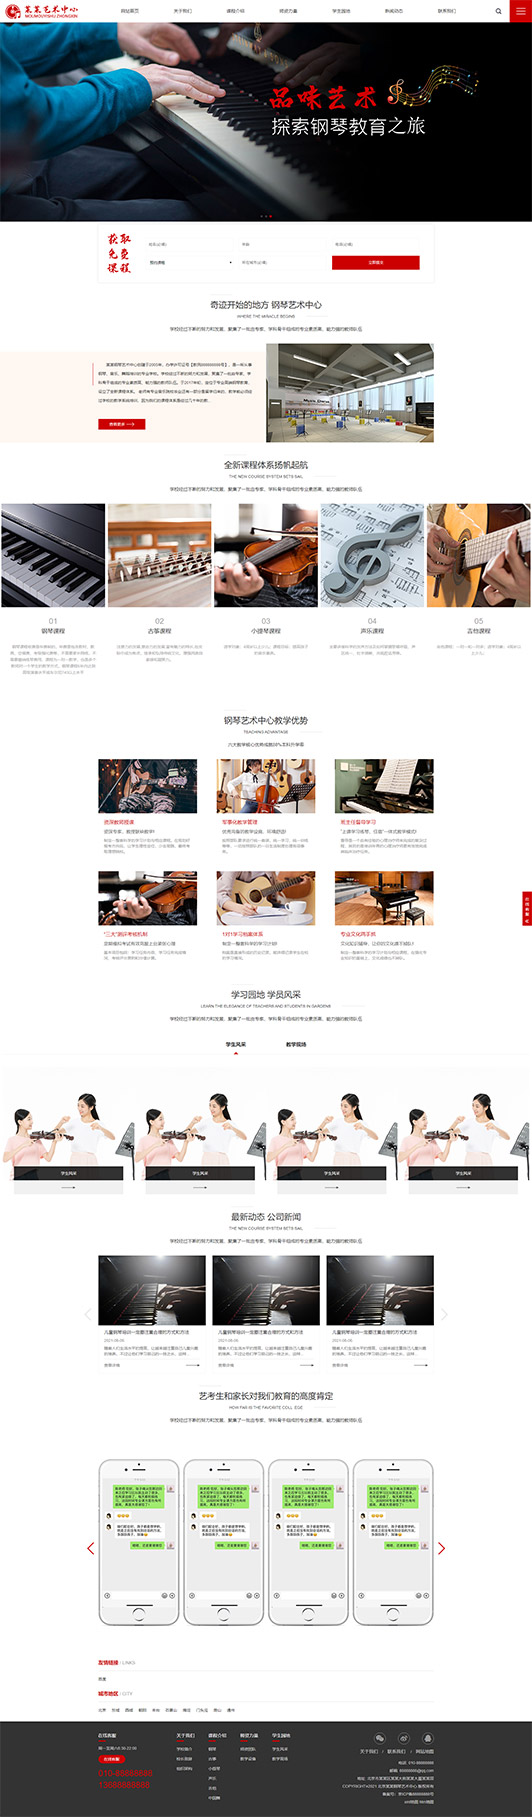 马鞍山钢琴艺术培训公司响应式企业网站